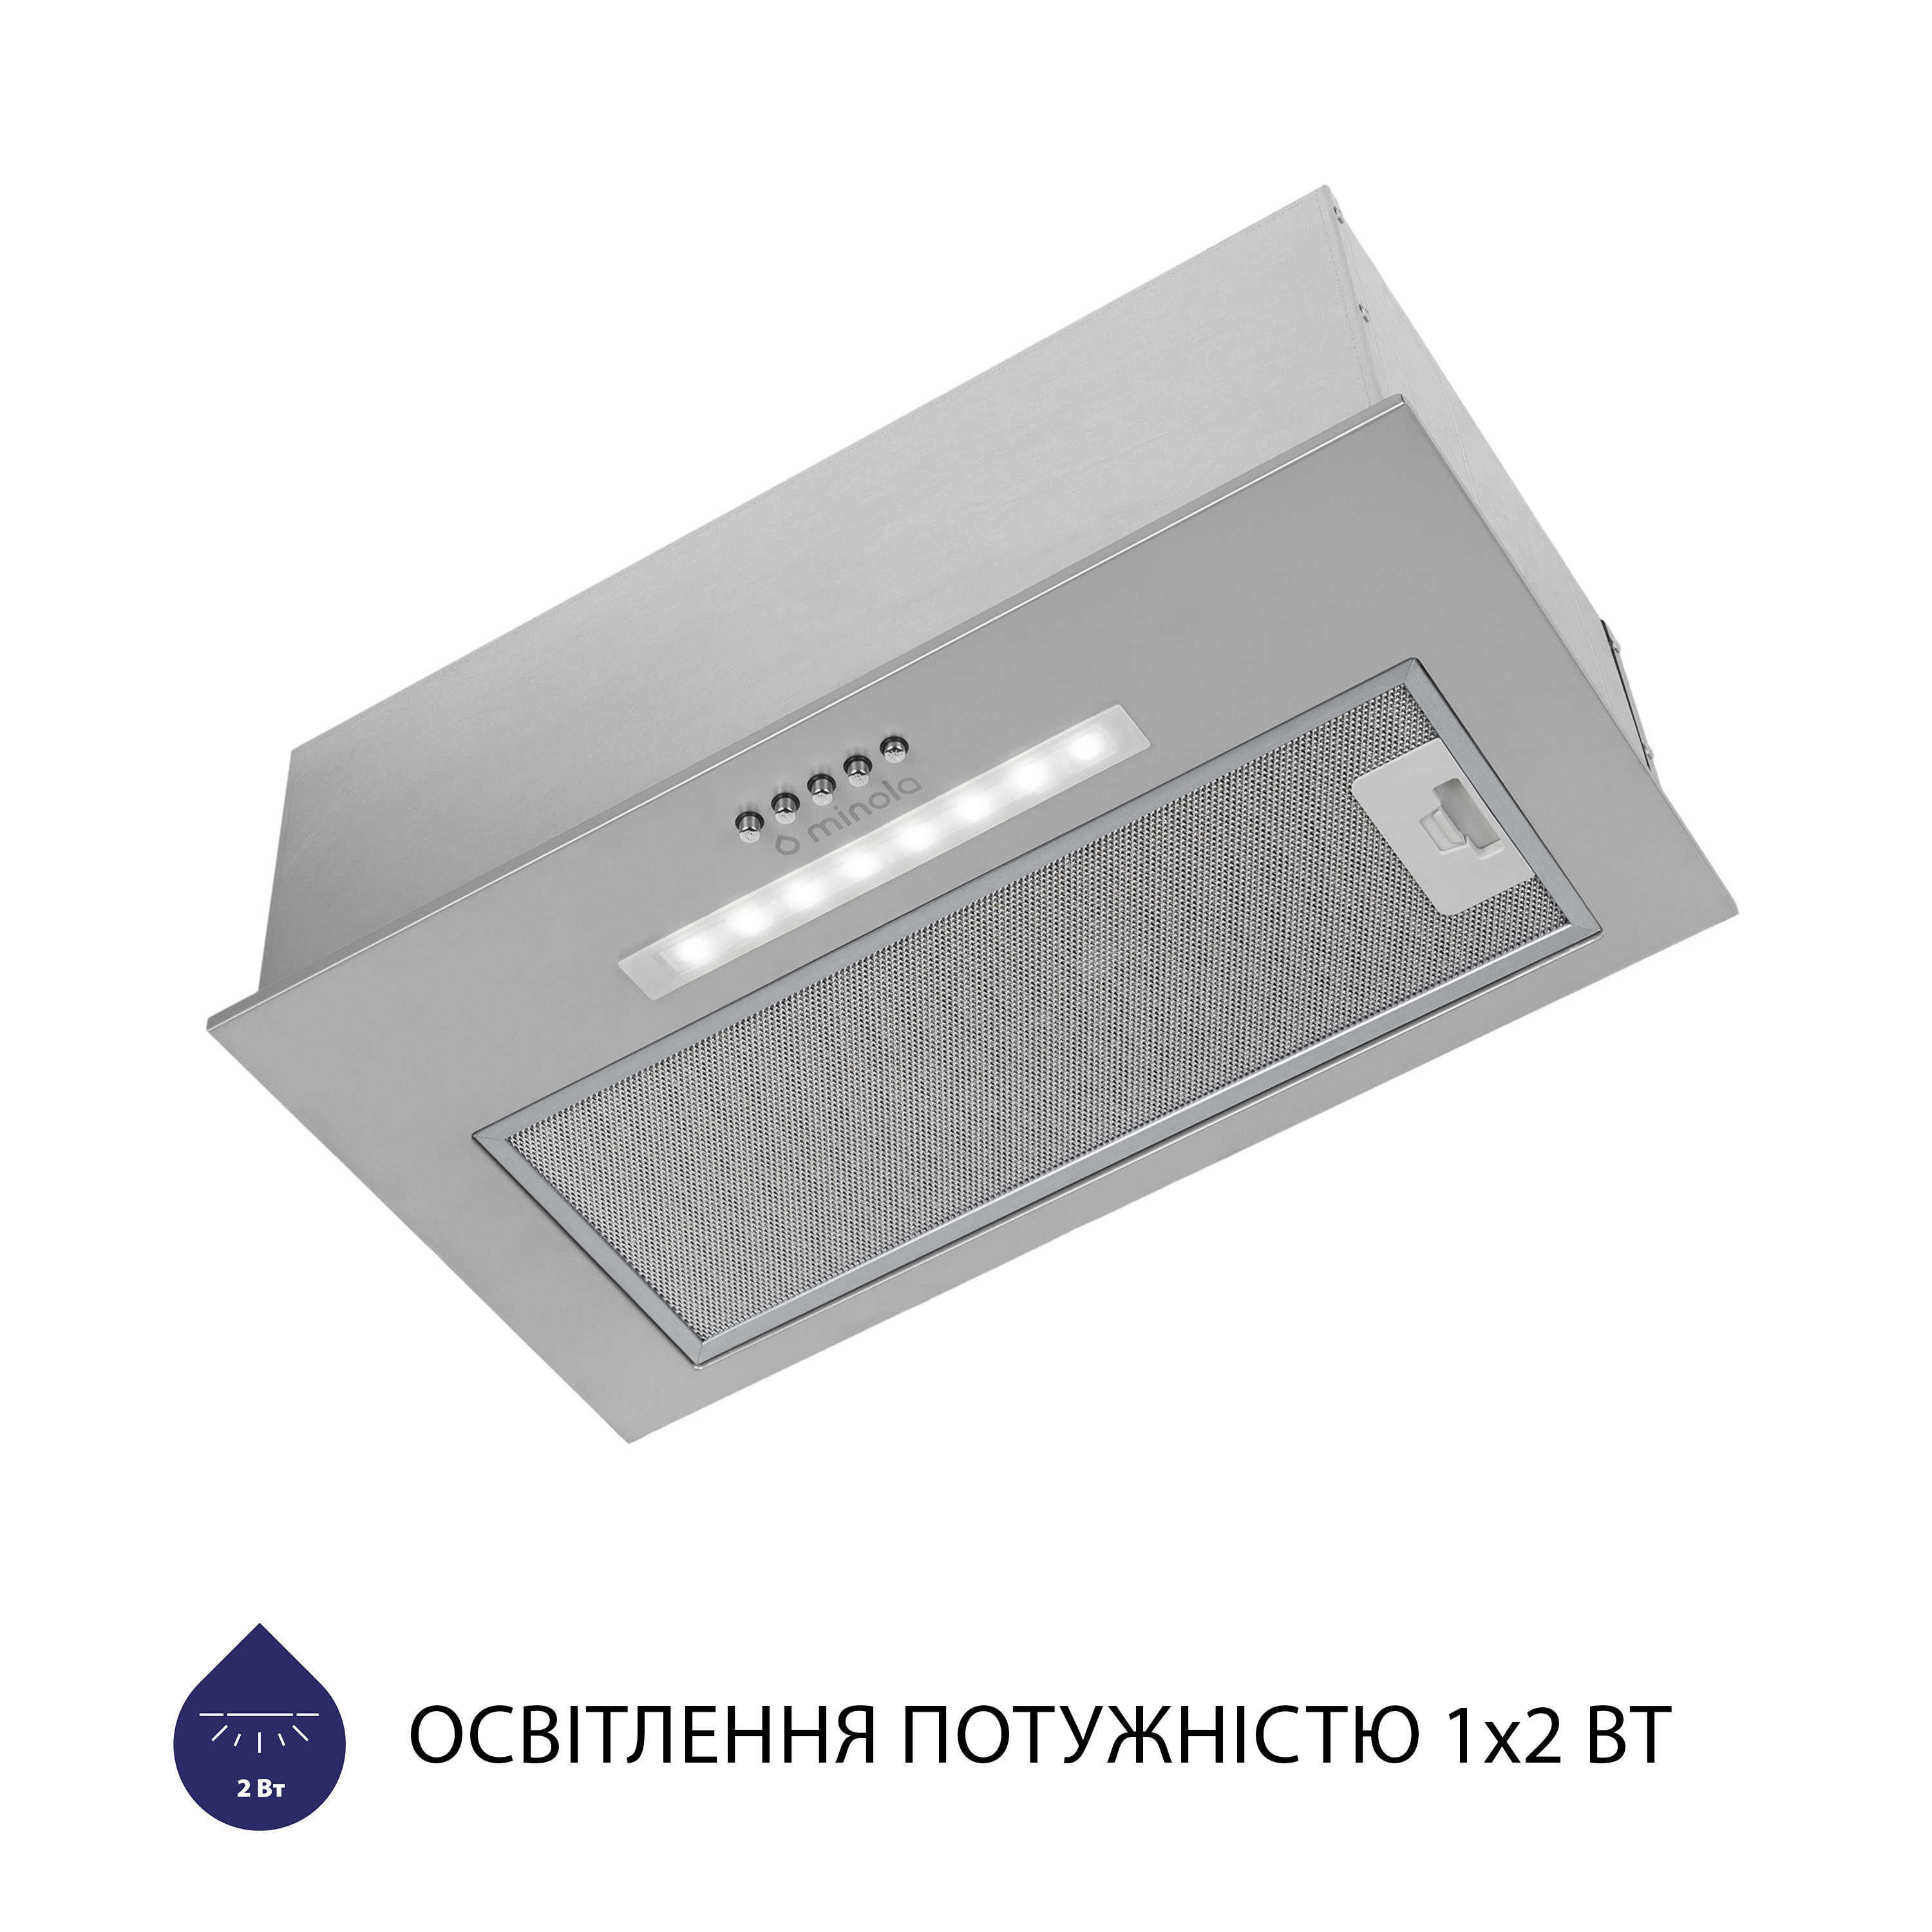 Витяжка кухонная полновстраиваемая Minola HBI 5323 GR 800 LED отзывы - изображения 5